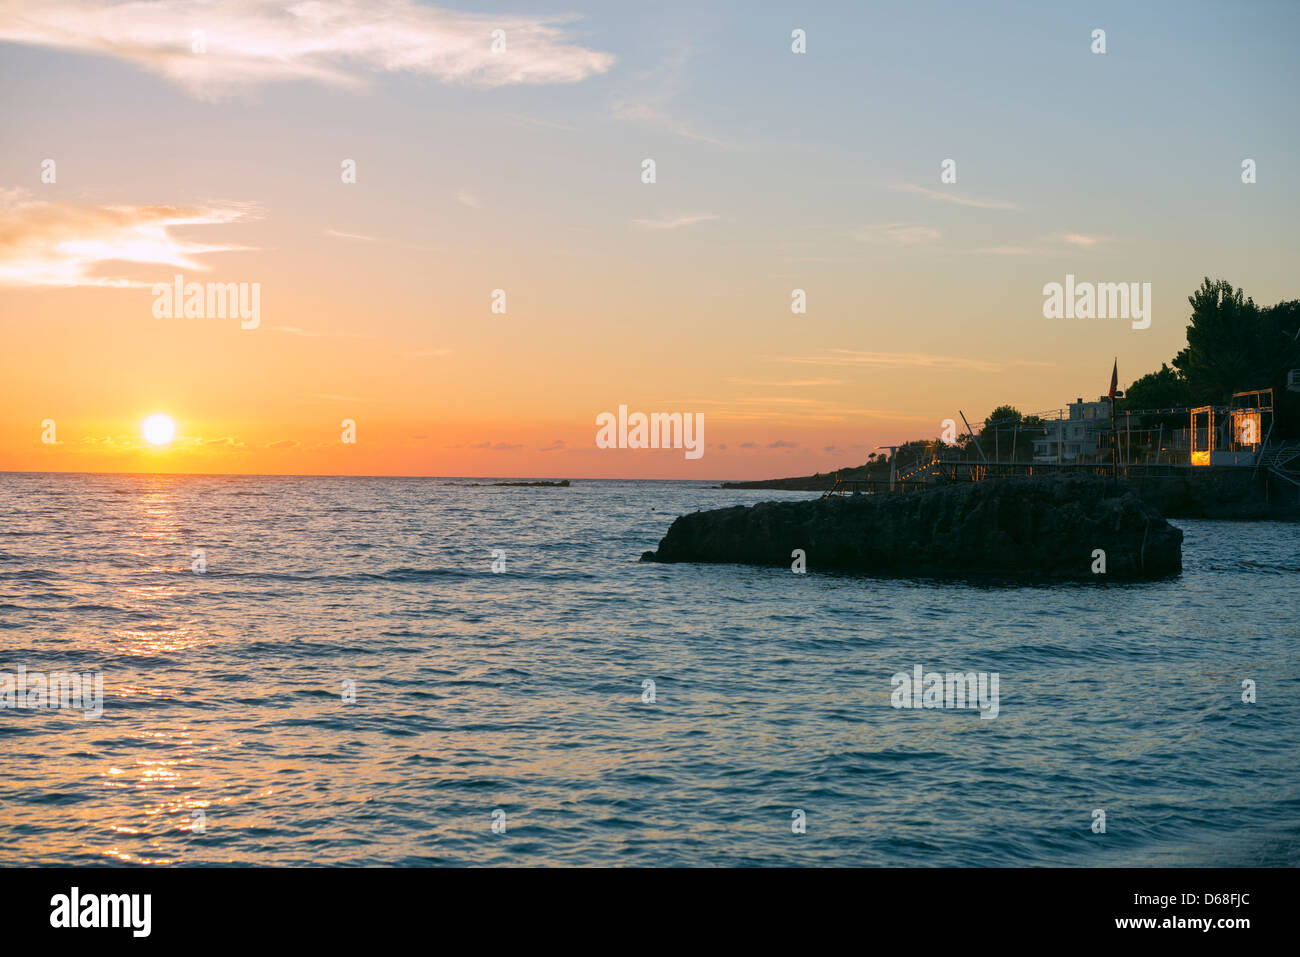 Europe, Albania, Mediterranean Sea, Dhermi, sunset Stock Photo